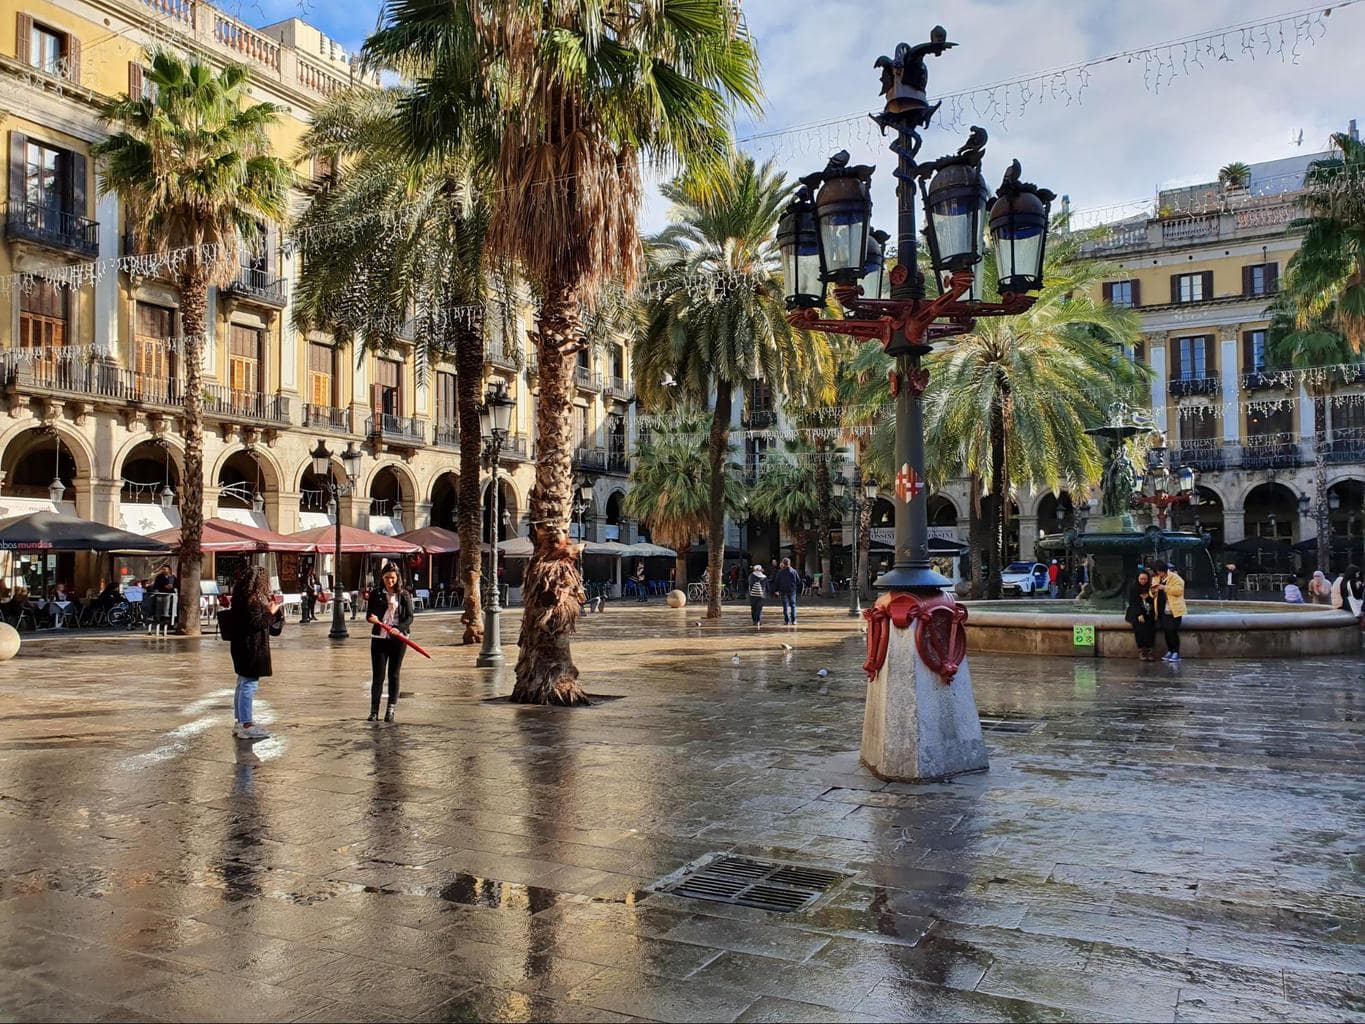 Gaudi’s lamppost